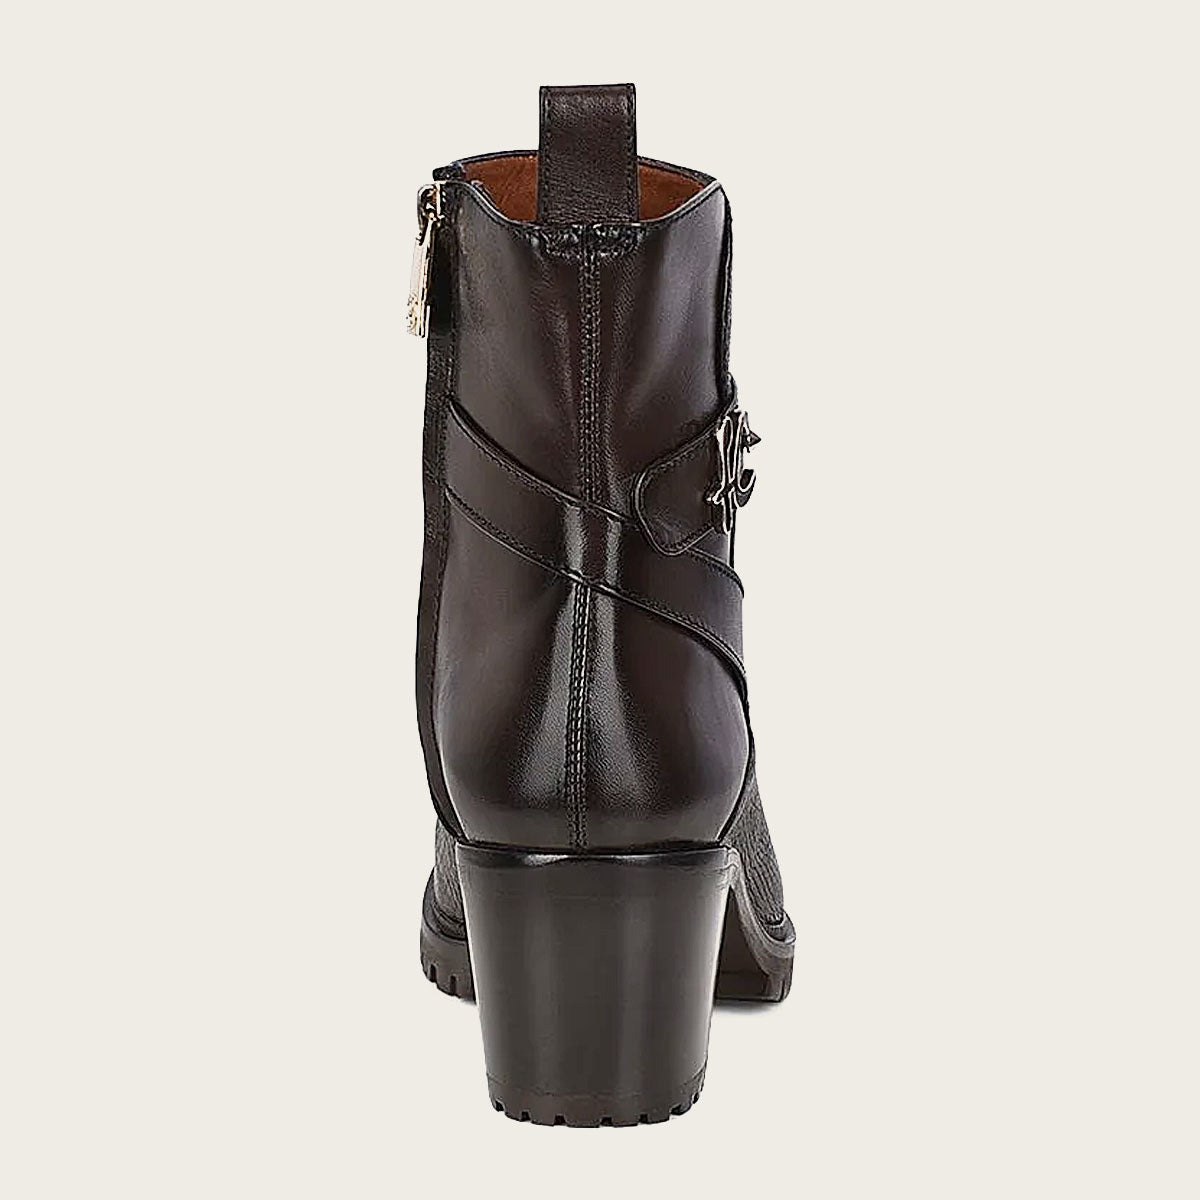 Dark brown deer leather urban booties, Ankle boot for women in genuine deerskin and bovine leather. 